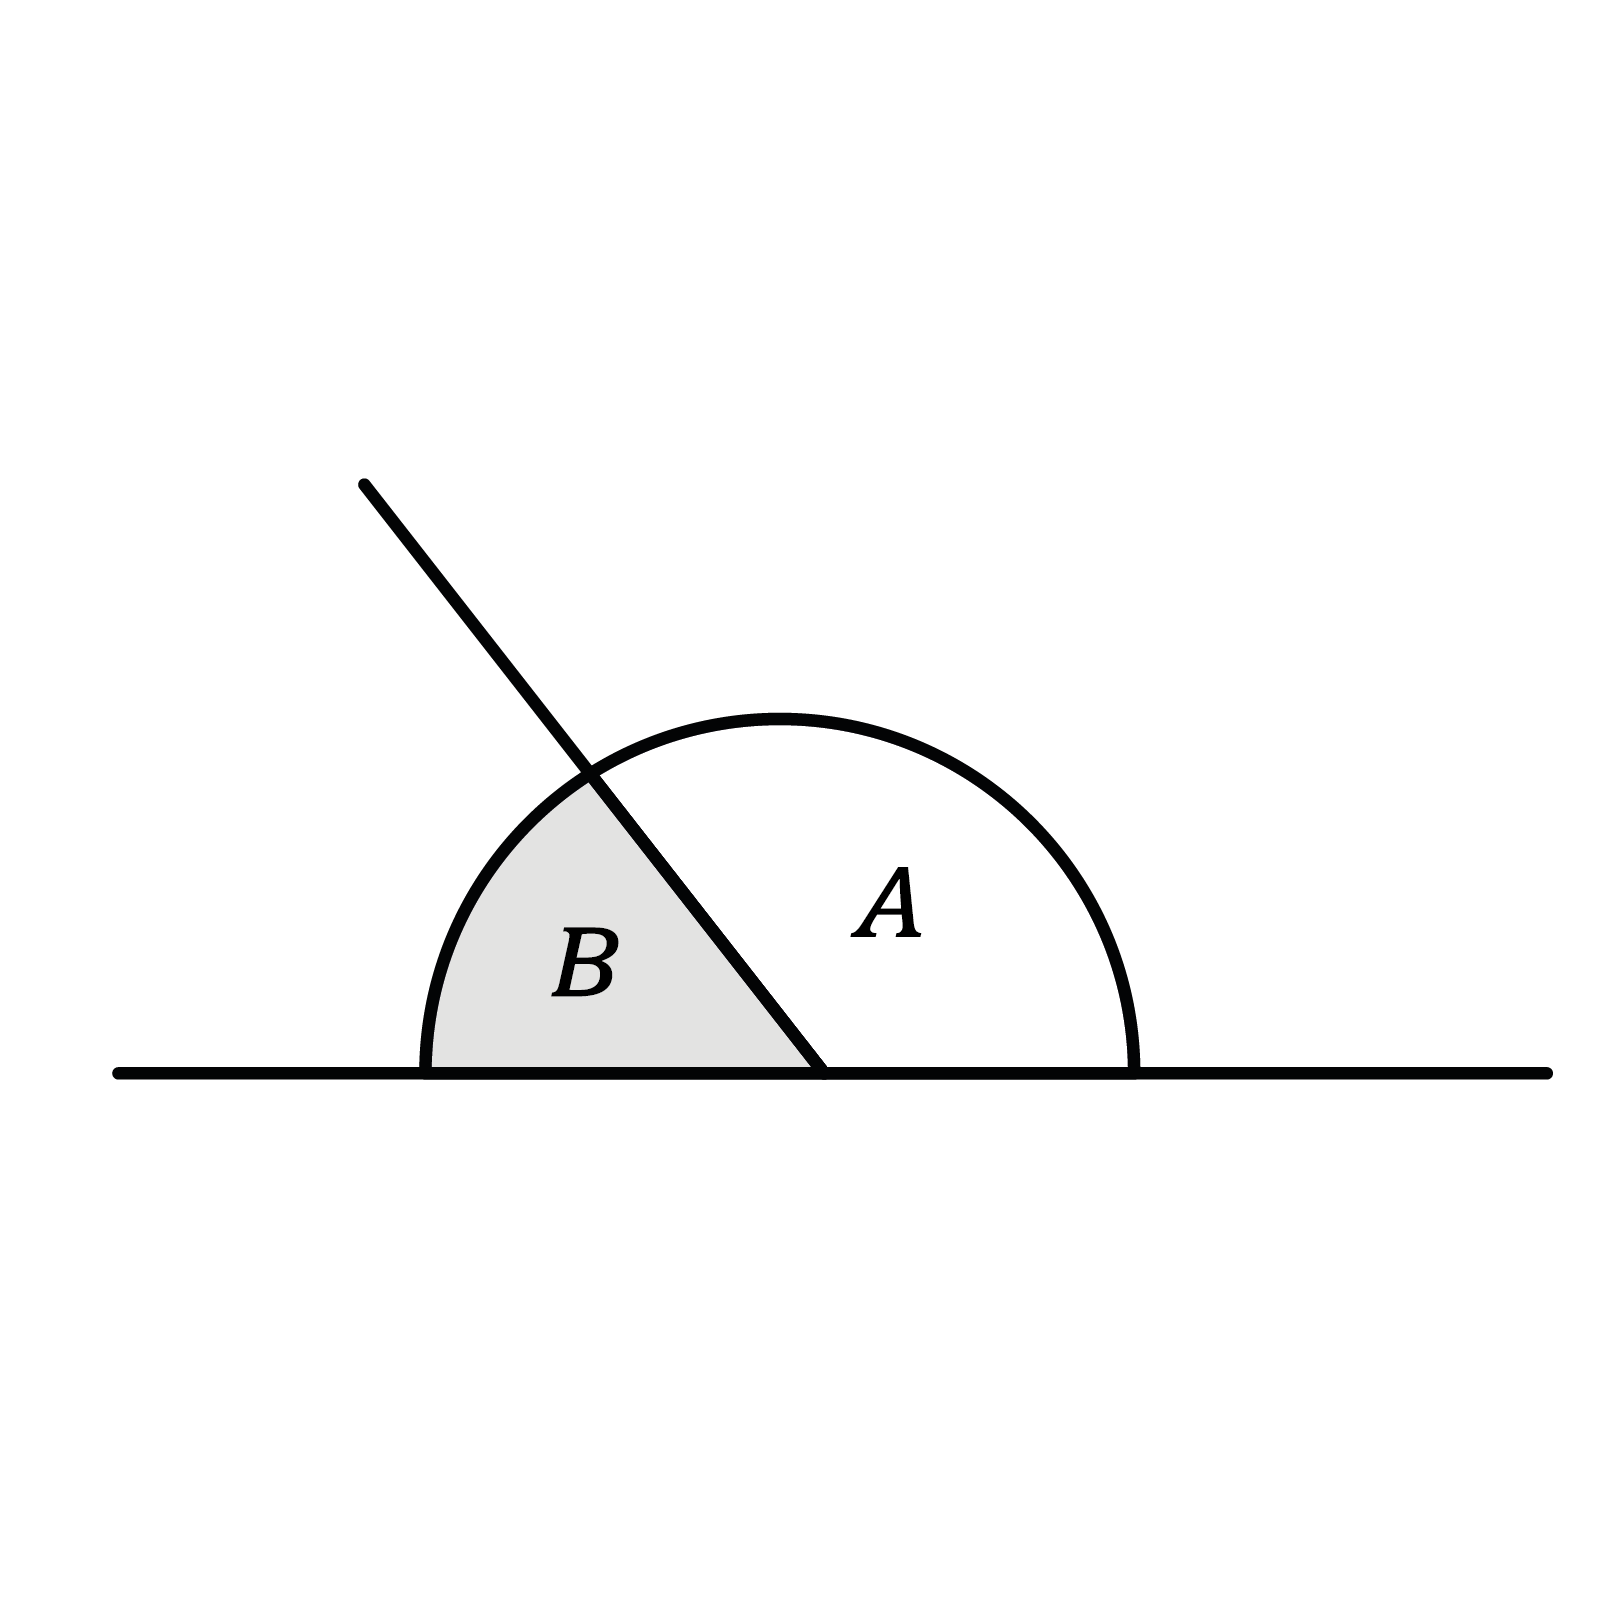 Matematica; Angoli; 1a media; Angoli di completamento e angoli opposti al vertice